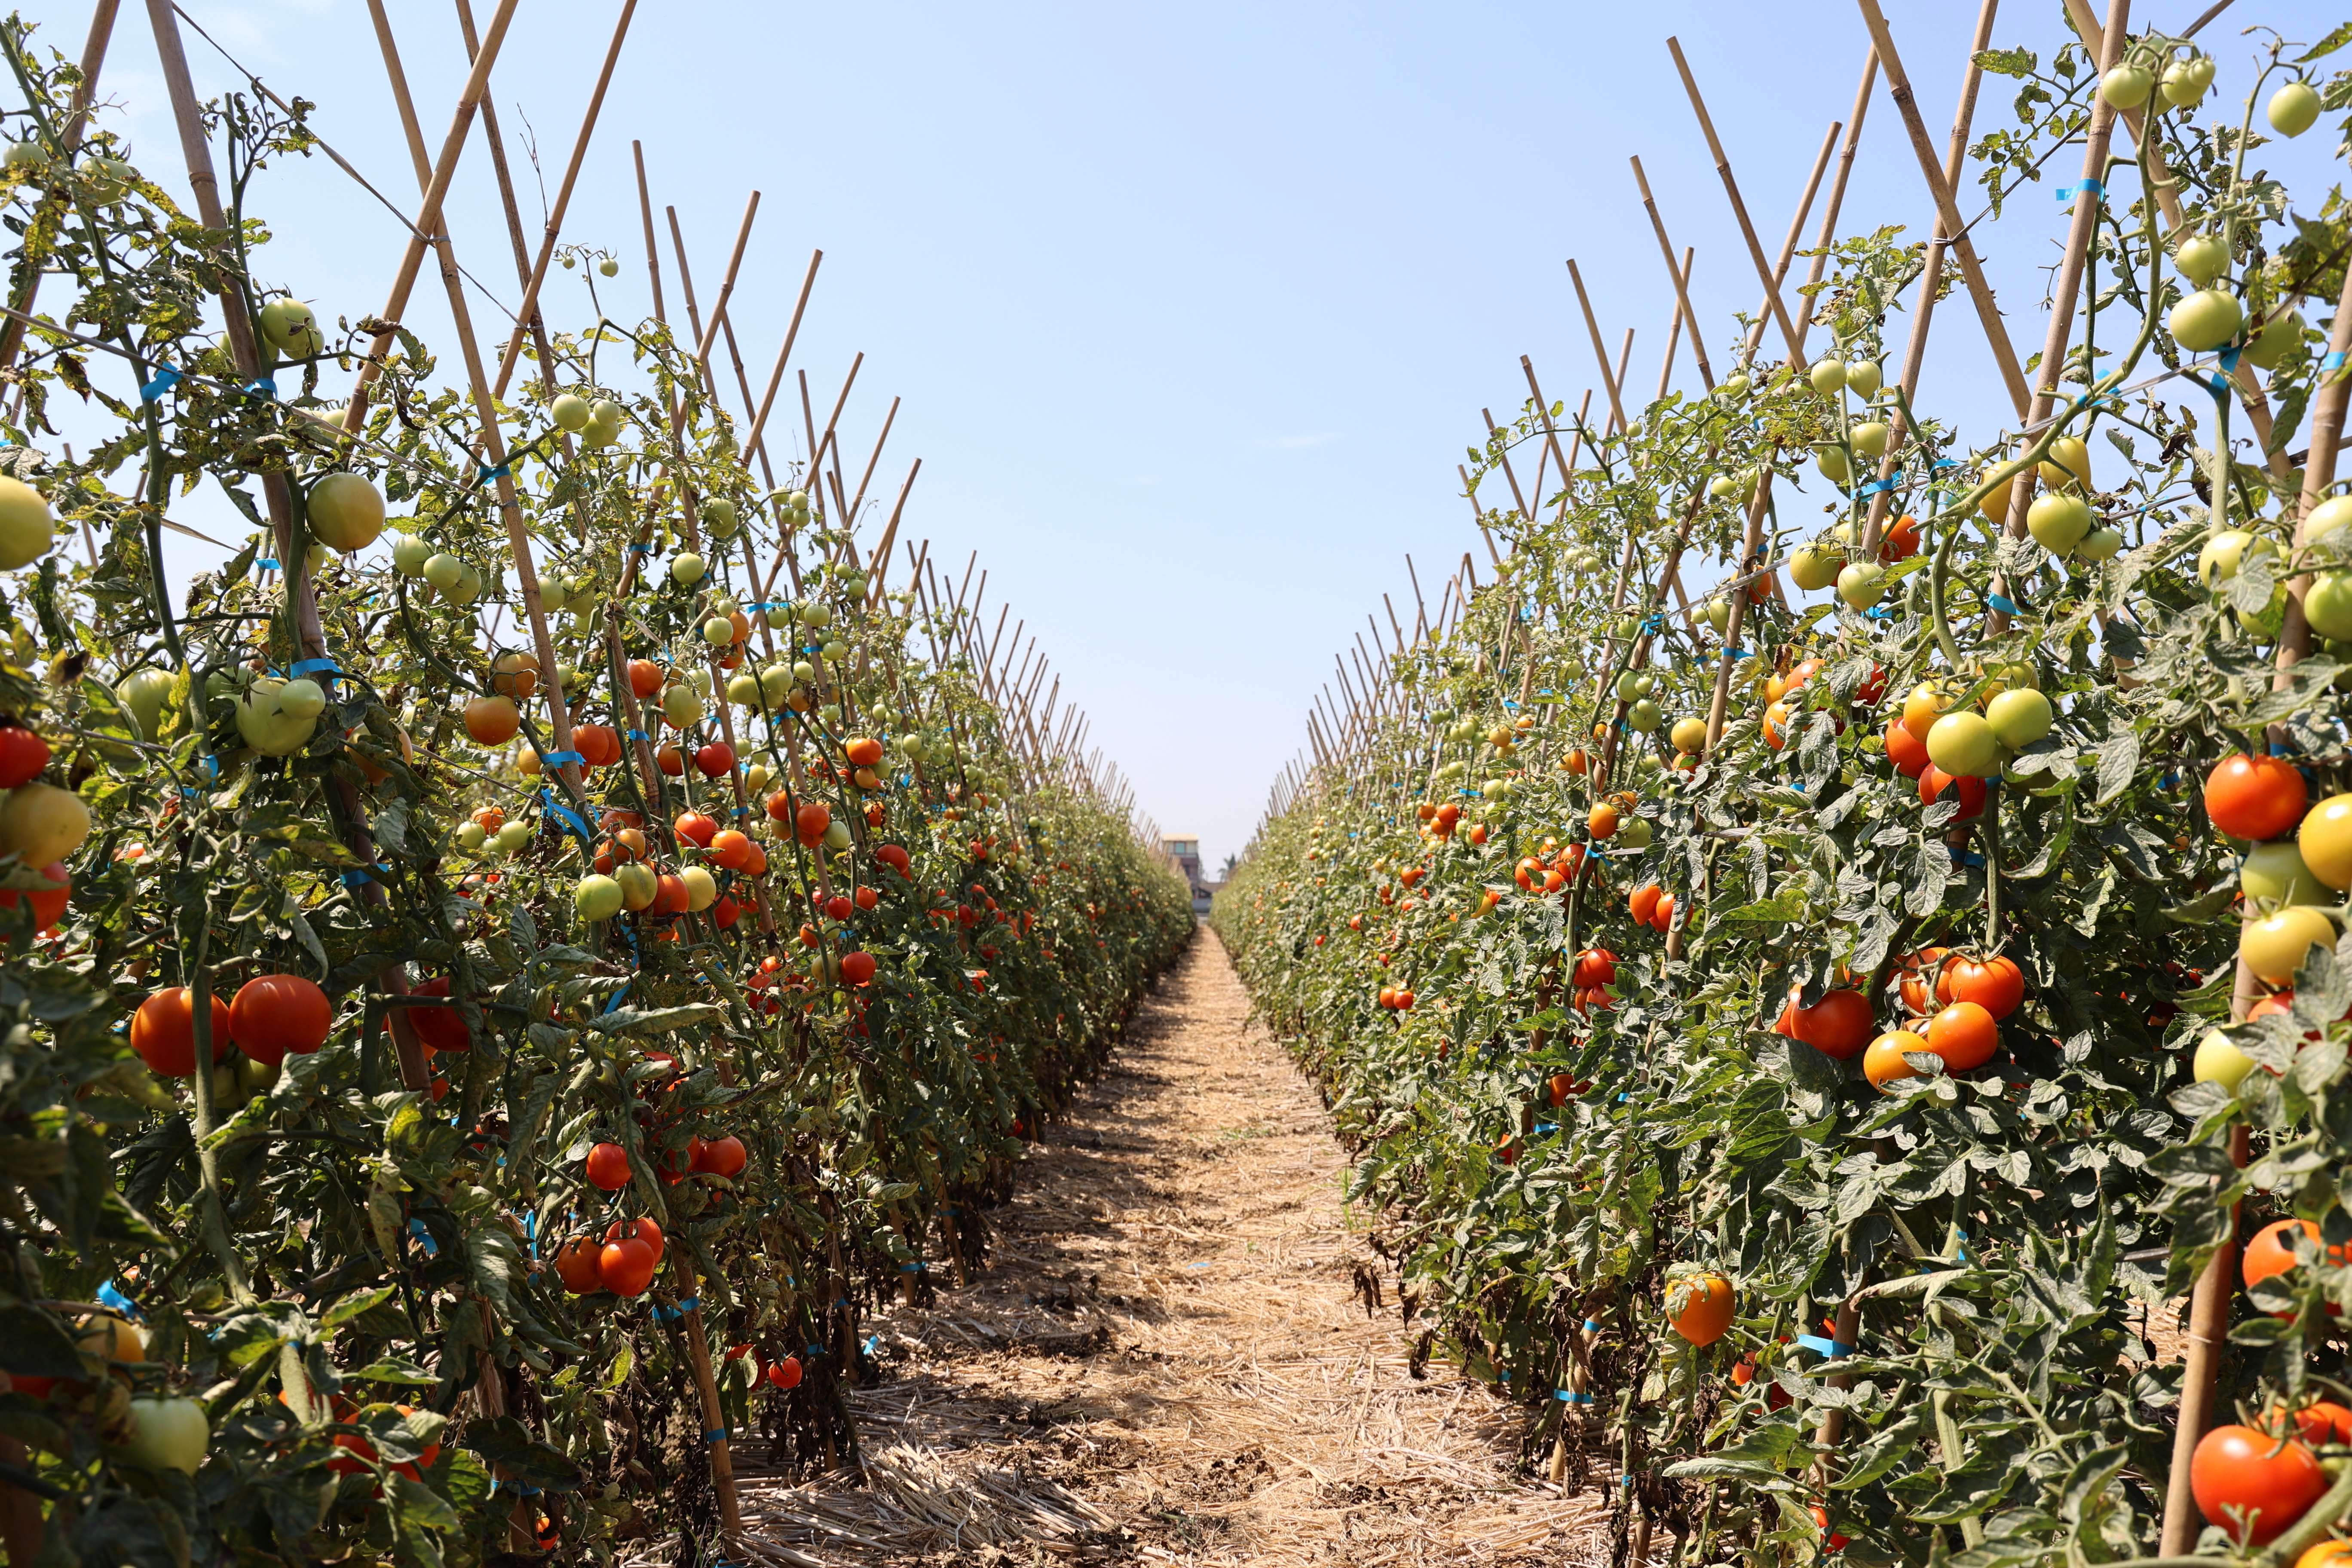 雲林地區牛番茄栽種面積約500公頃